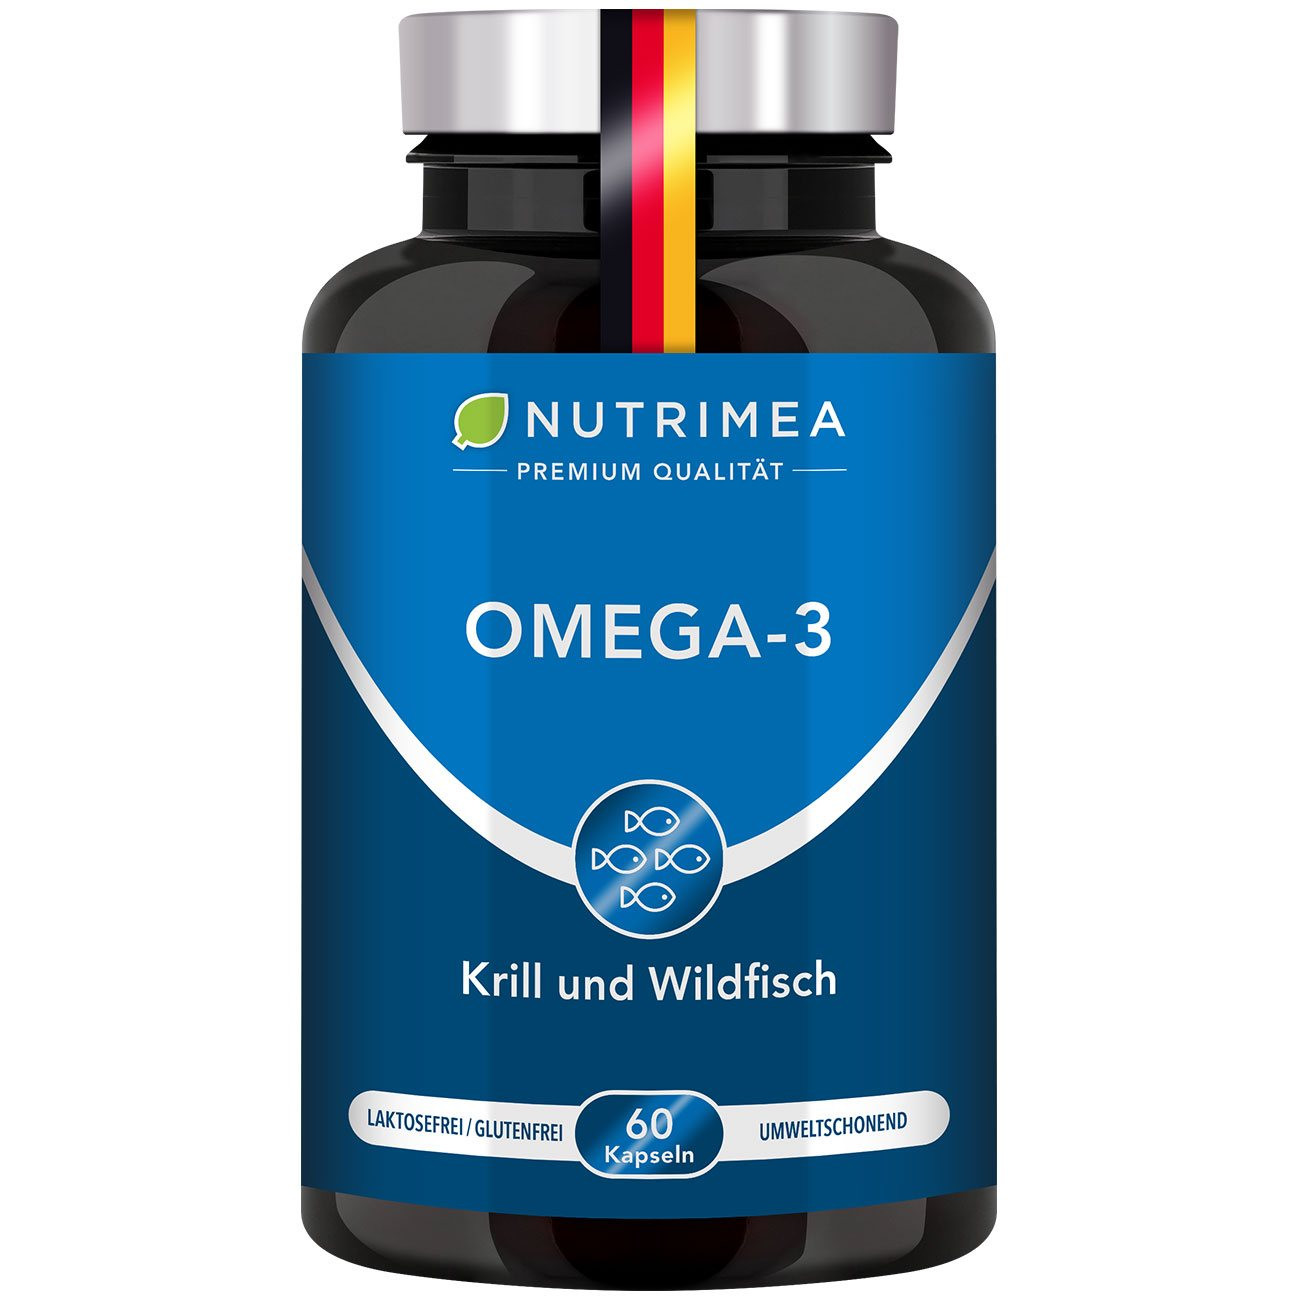 Abbildung der Pillendose des Supplements Omega 3 + Krill